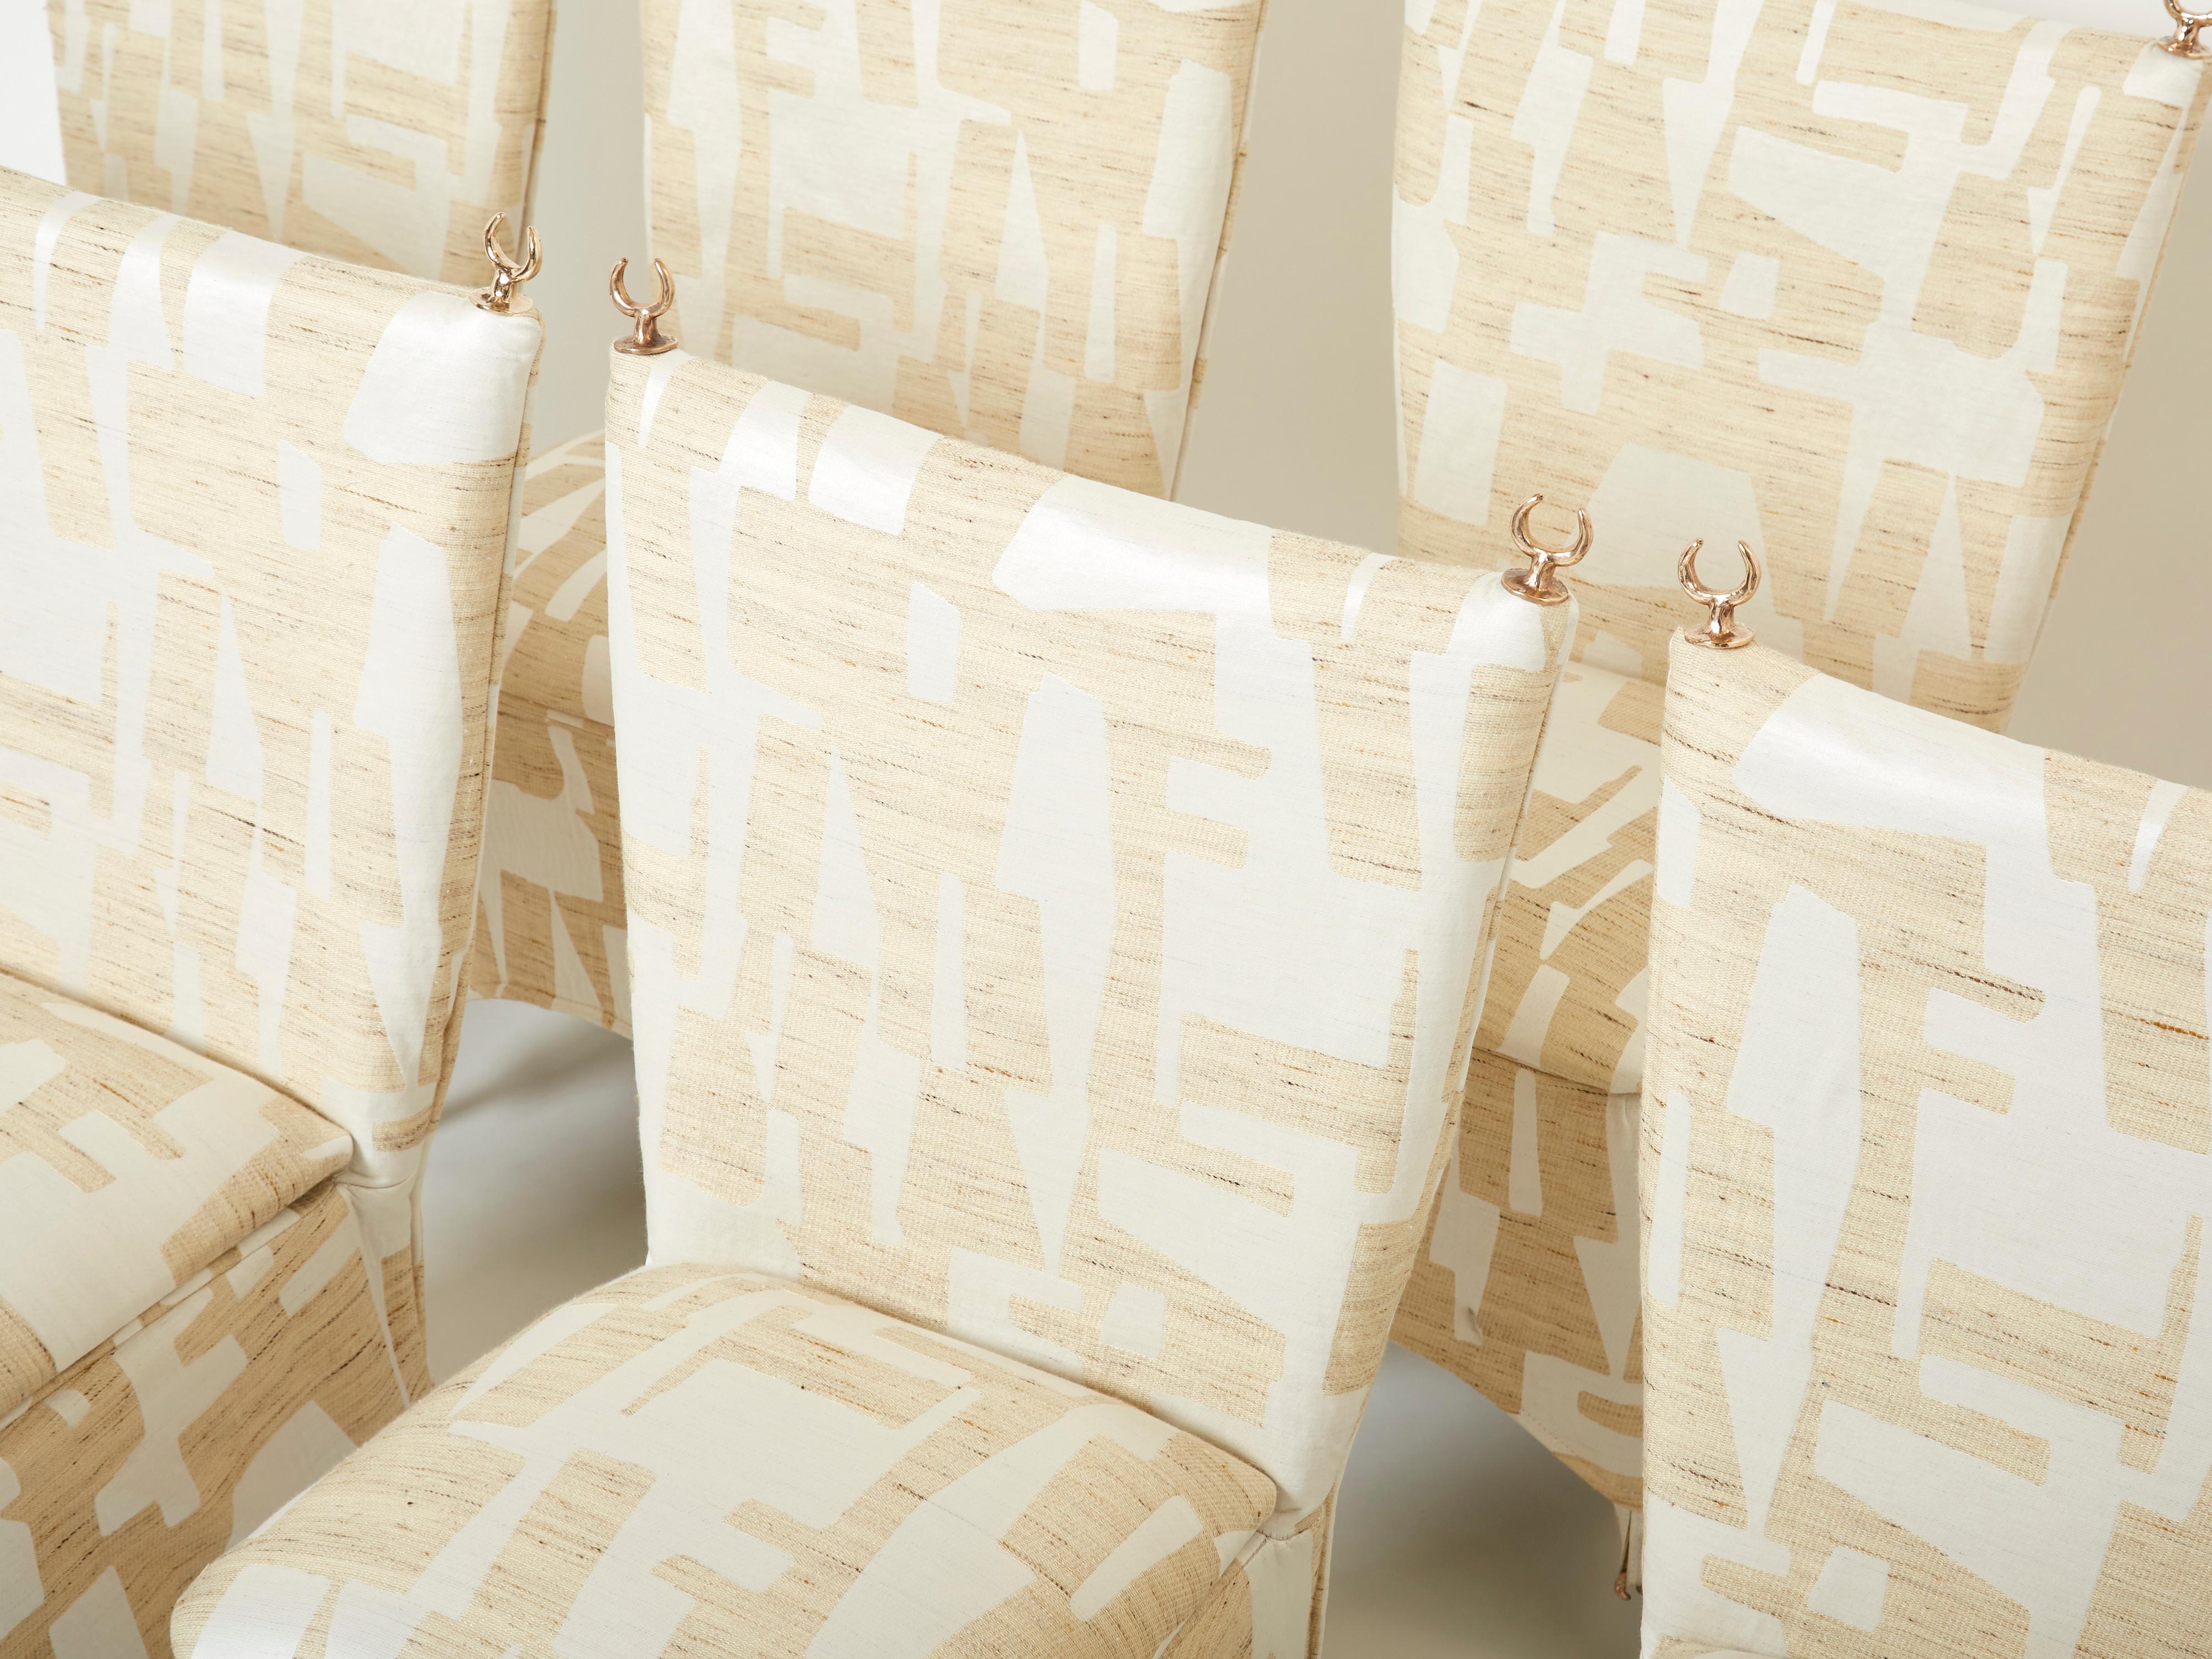 Il s'agit d'un ensemble rare de huit chaises de salle à manger d'Elizabeth Garouste & Mattia Bonetti, modèle Jour et Nuit, fabriquées en acier massif et en bronze. Garouste & Bonetti ont commencé leur collaboration et sont devenus célèbres dans le